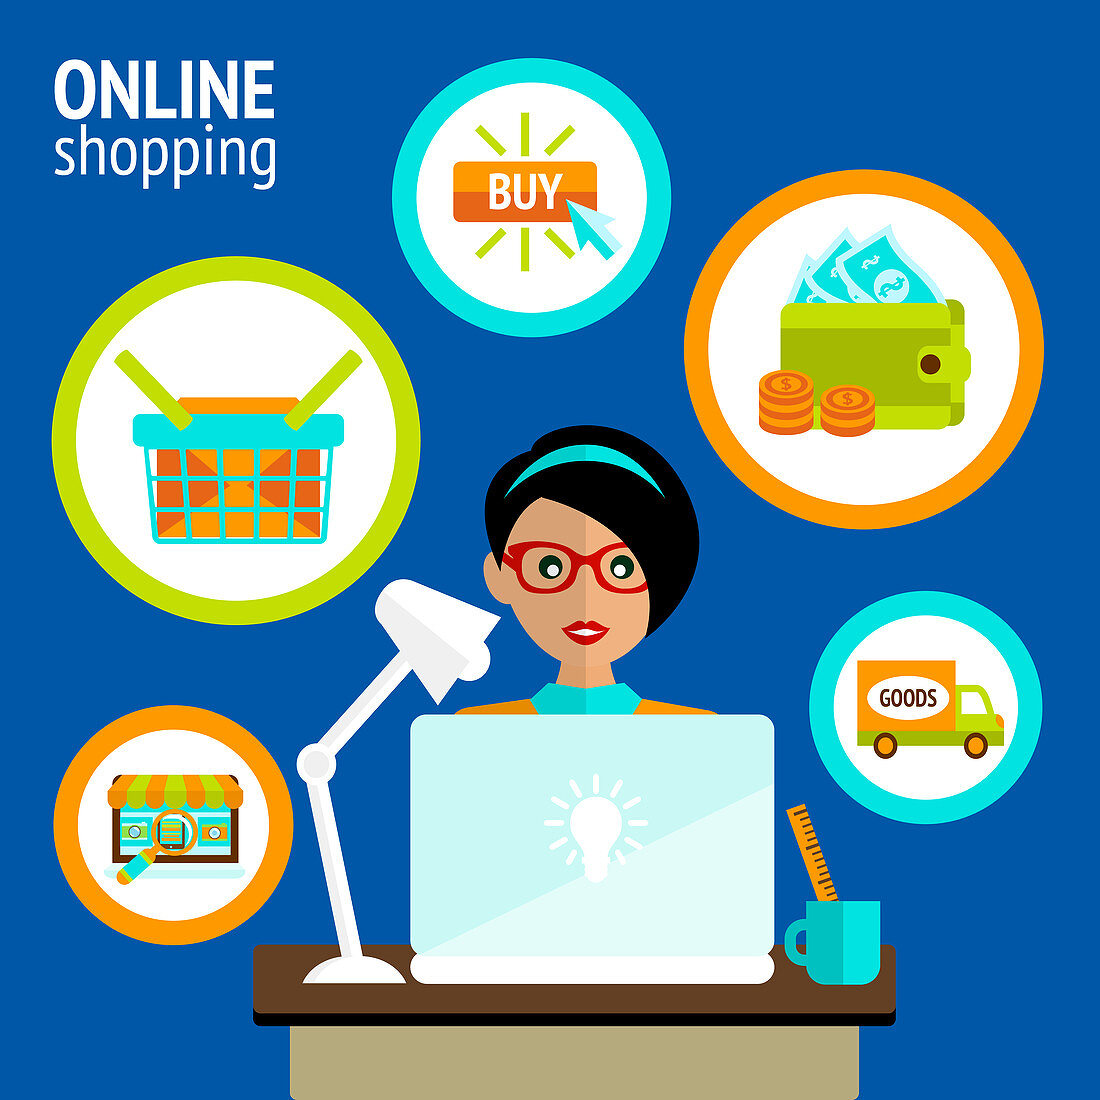 Online shopping, illustration